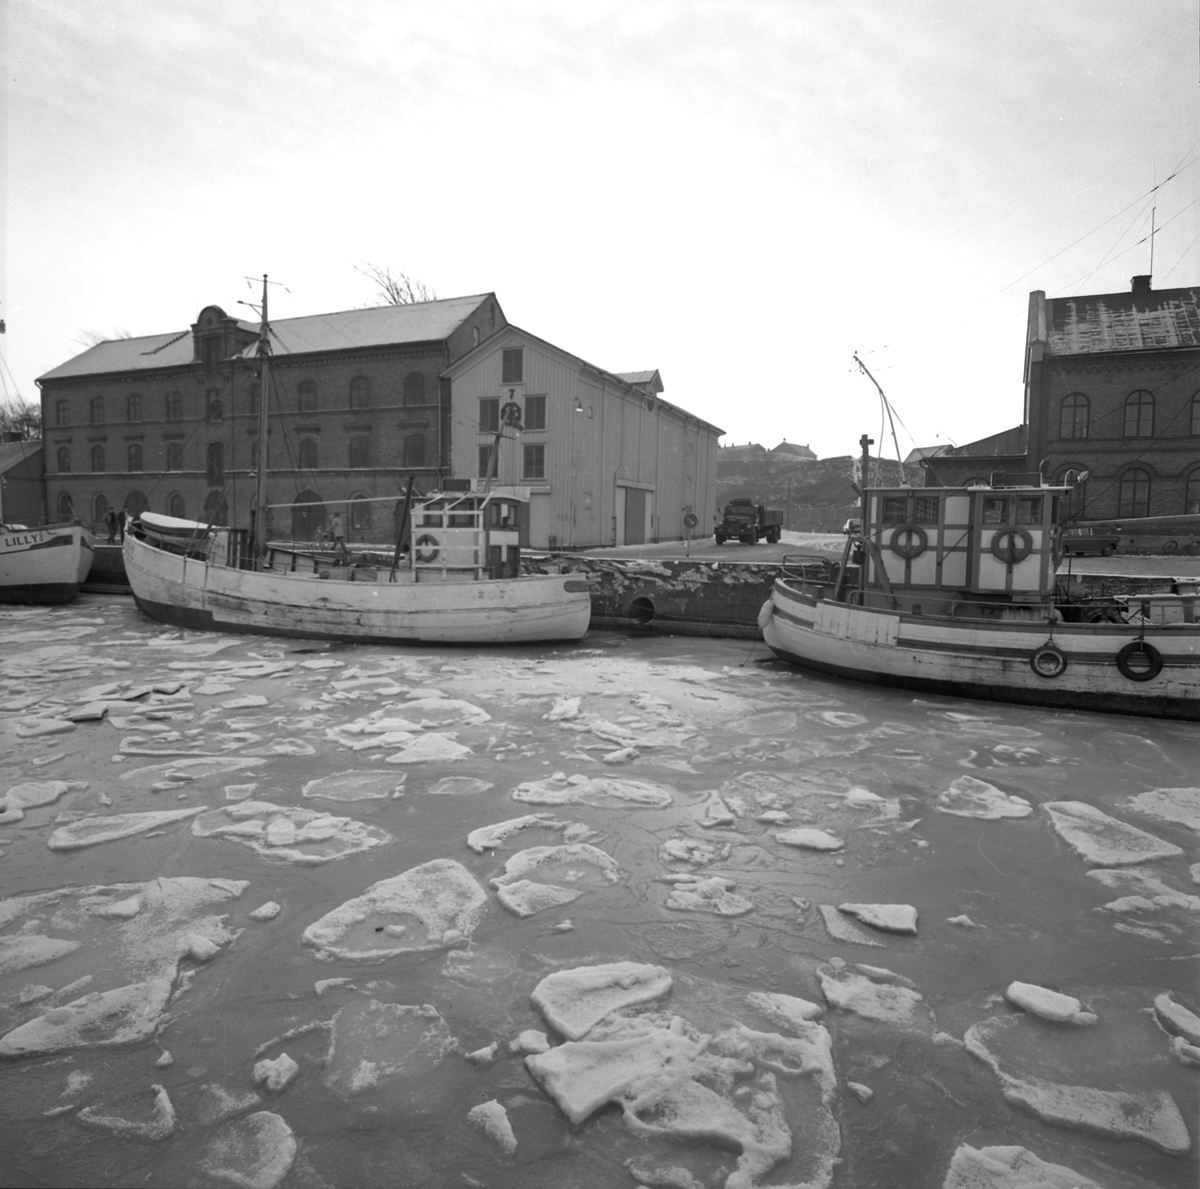 Tidningsartikel med rubriken "Fyra nyårsbåtar i Varbergs hamn" publicerad i Hallands Nyheter 1970-01-02. Till vänster ses hamnmagasinet från 1874 med Lundqvists trämagasin och till höger tullhuset.
(Bilderna inlagda i omvänd ordning mot id-numren)